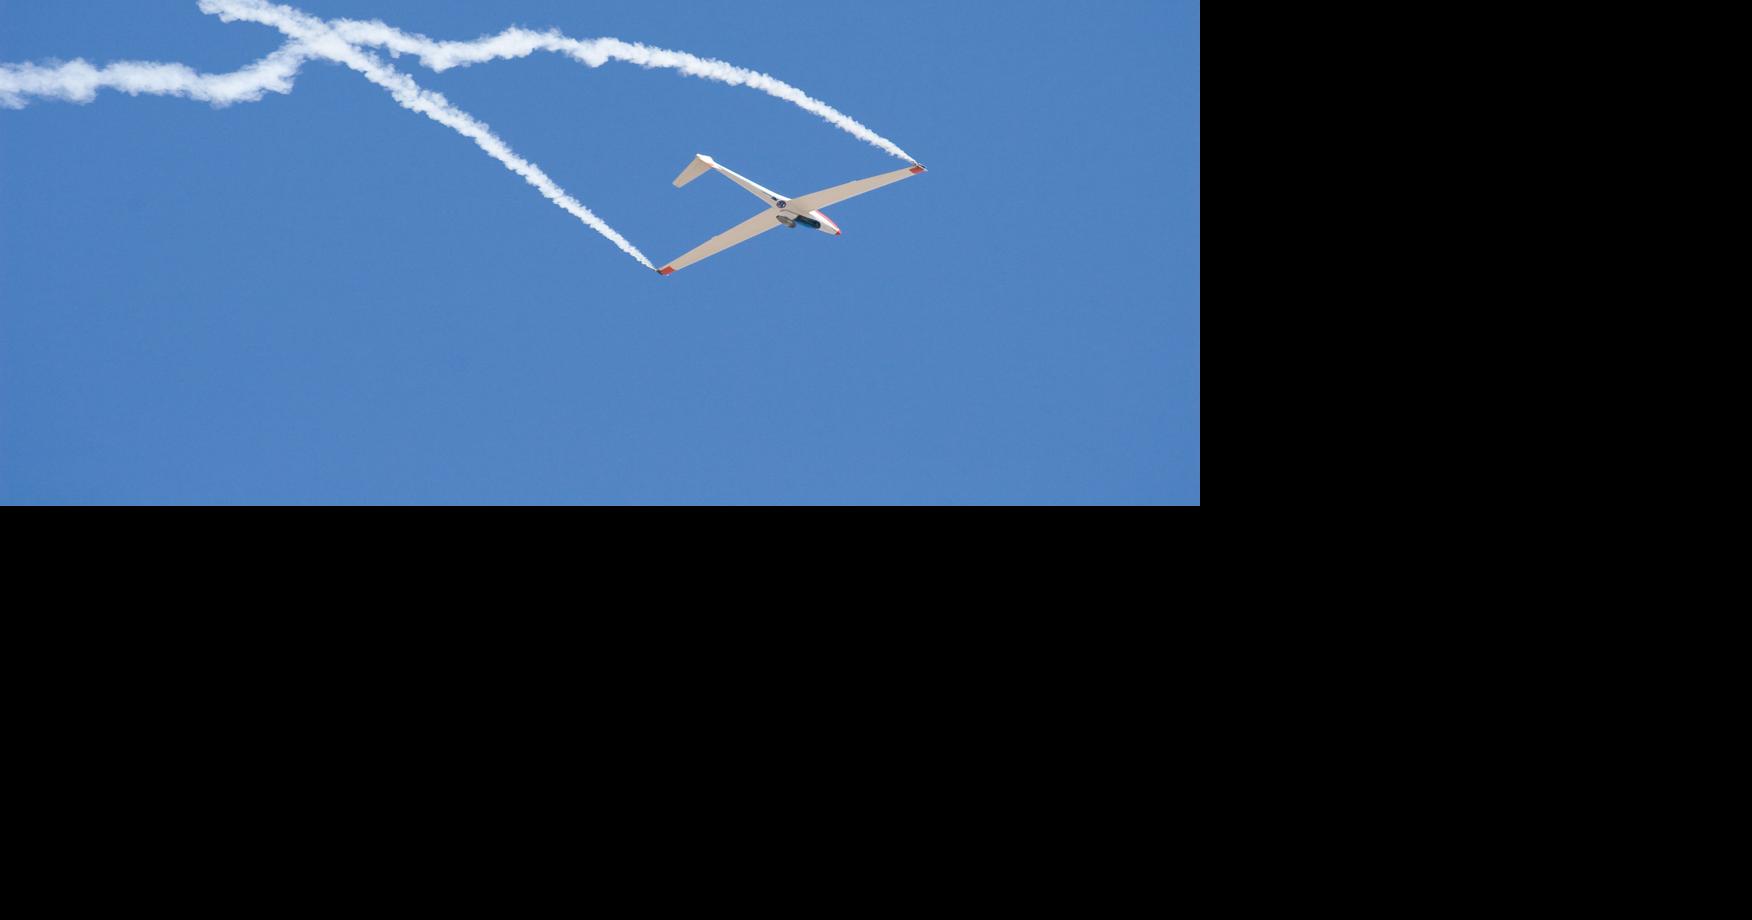 Bob Carlton and the Super Salto gliding into air show